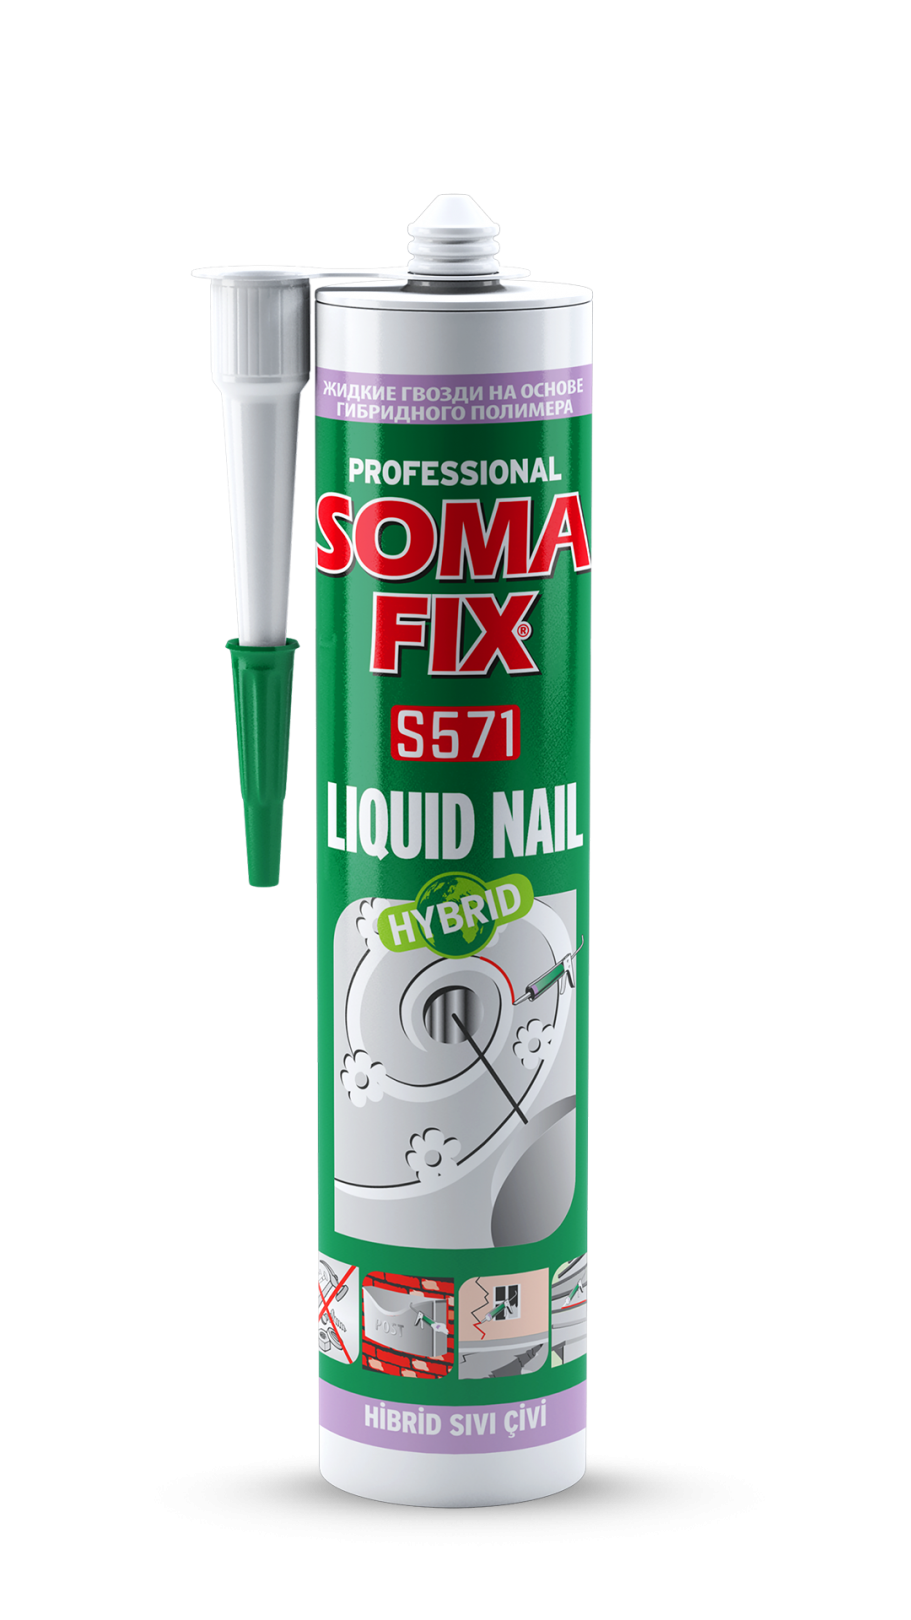 Somafix Hybrid Liquid Nail S571